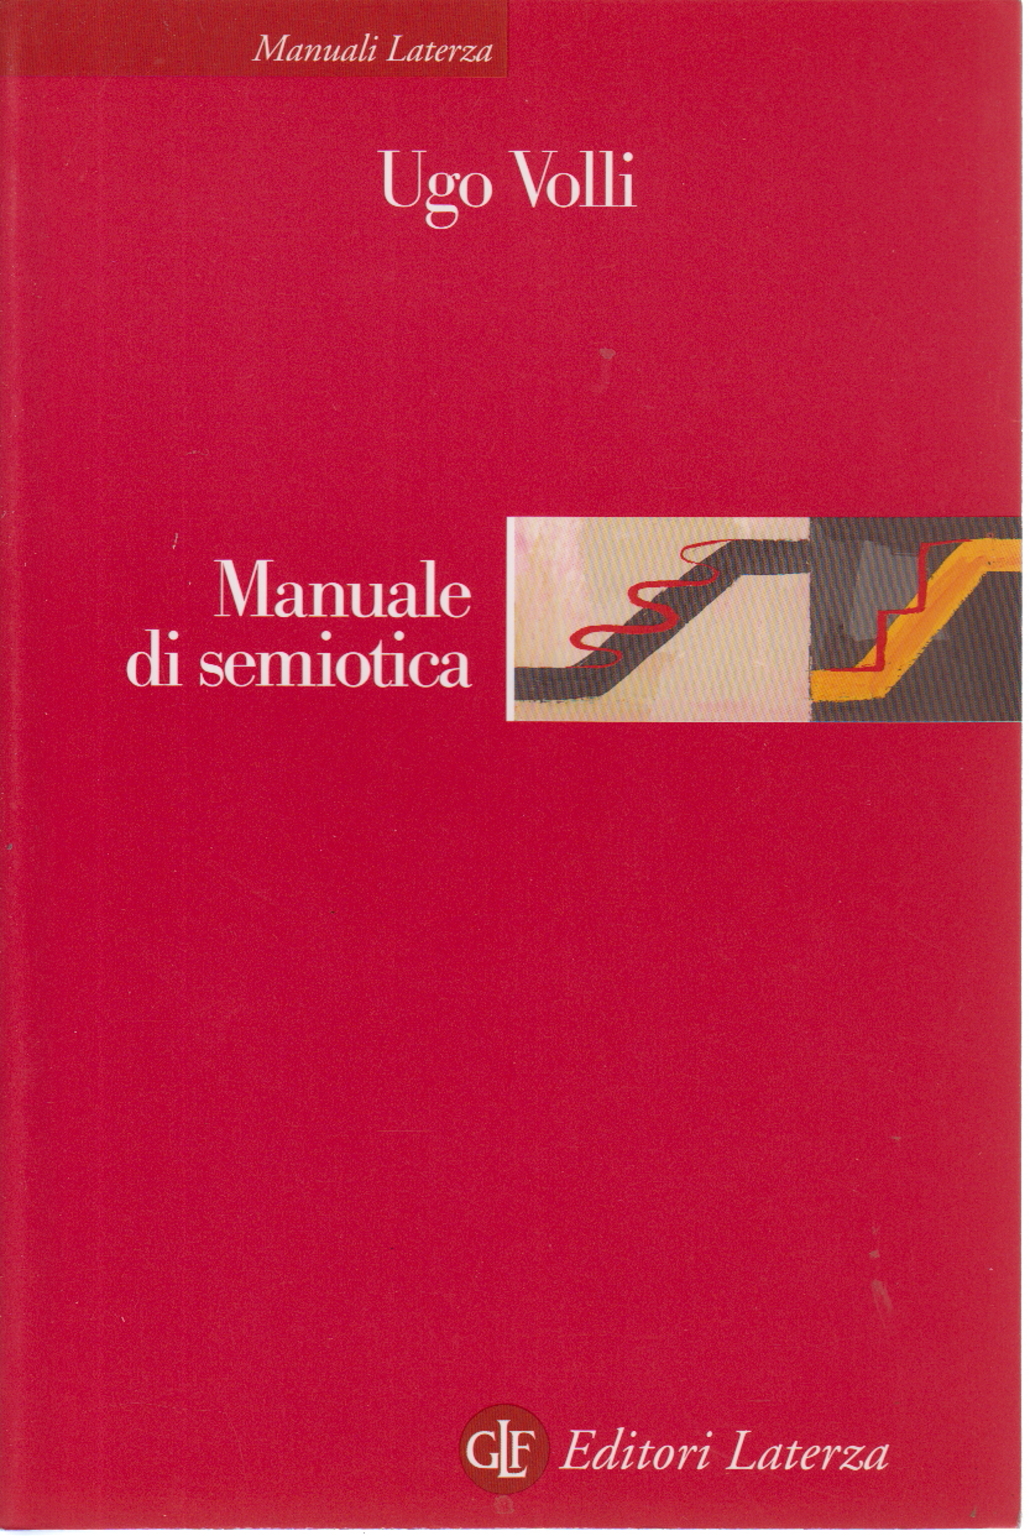 Manual de semiótica, Ugo Volli